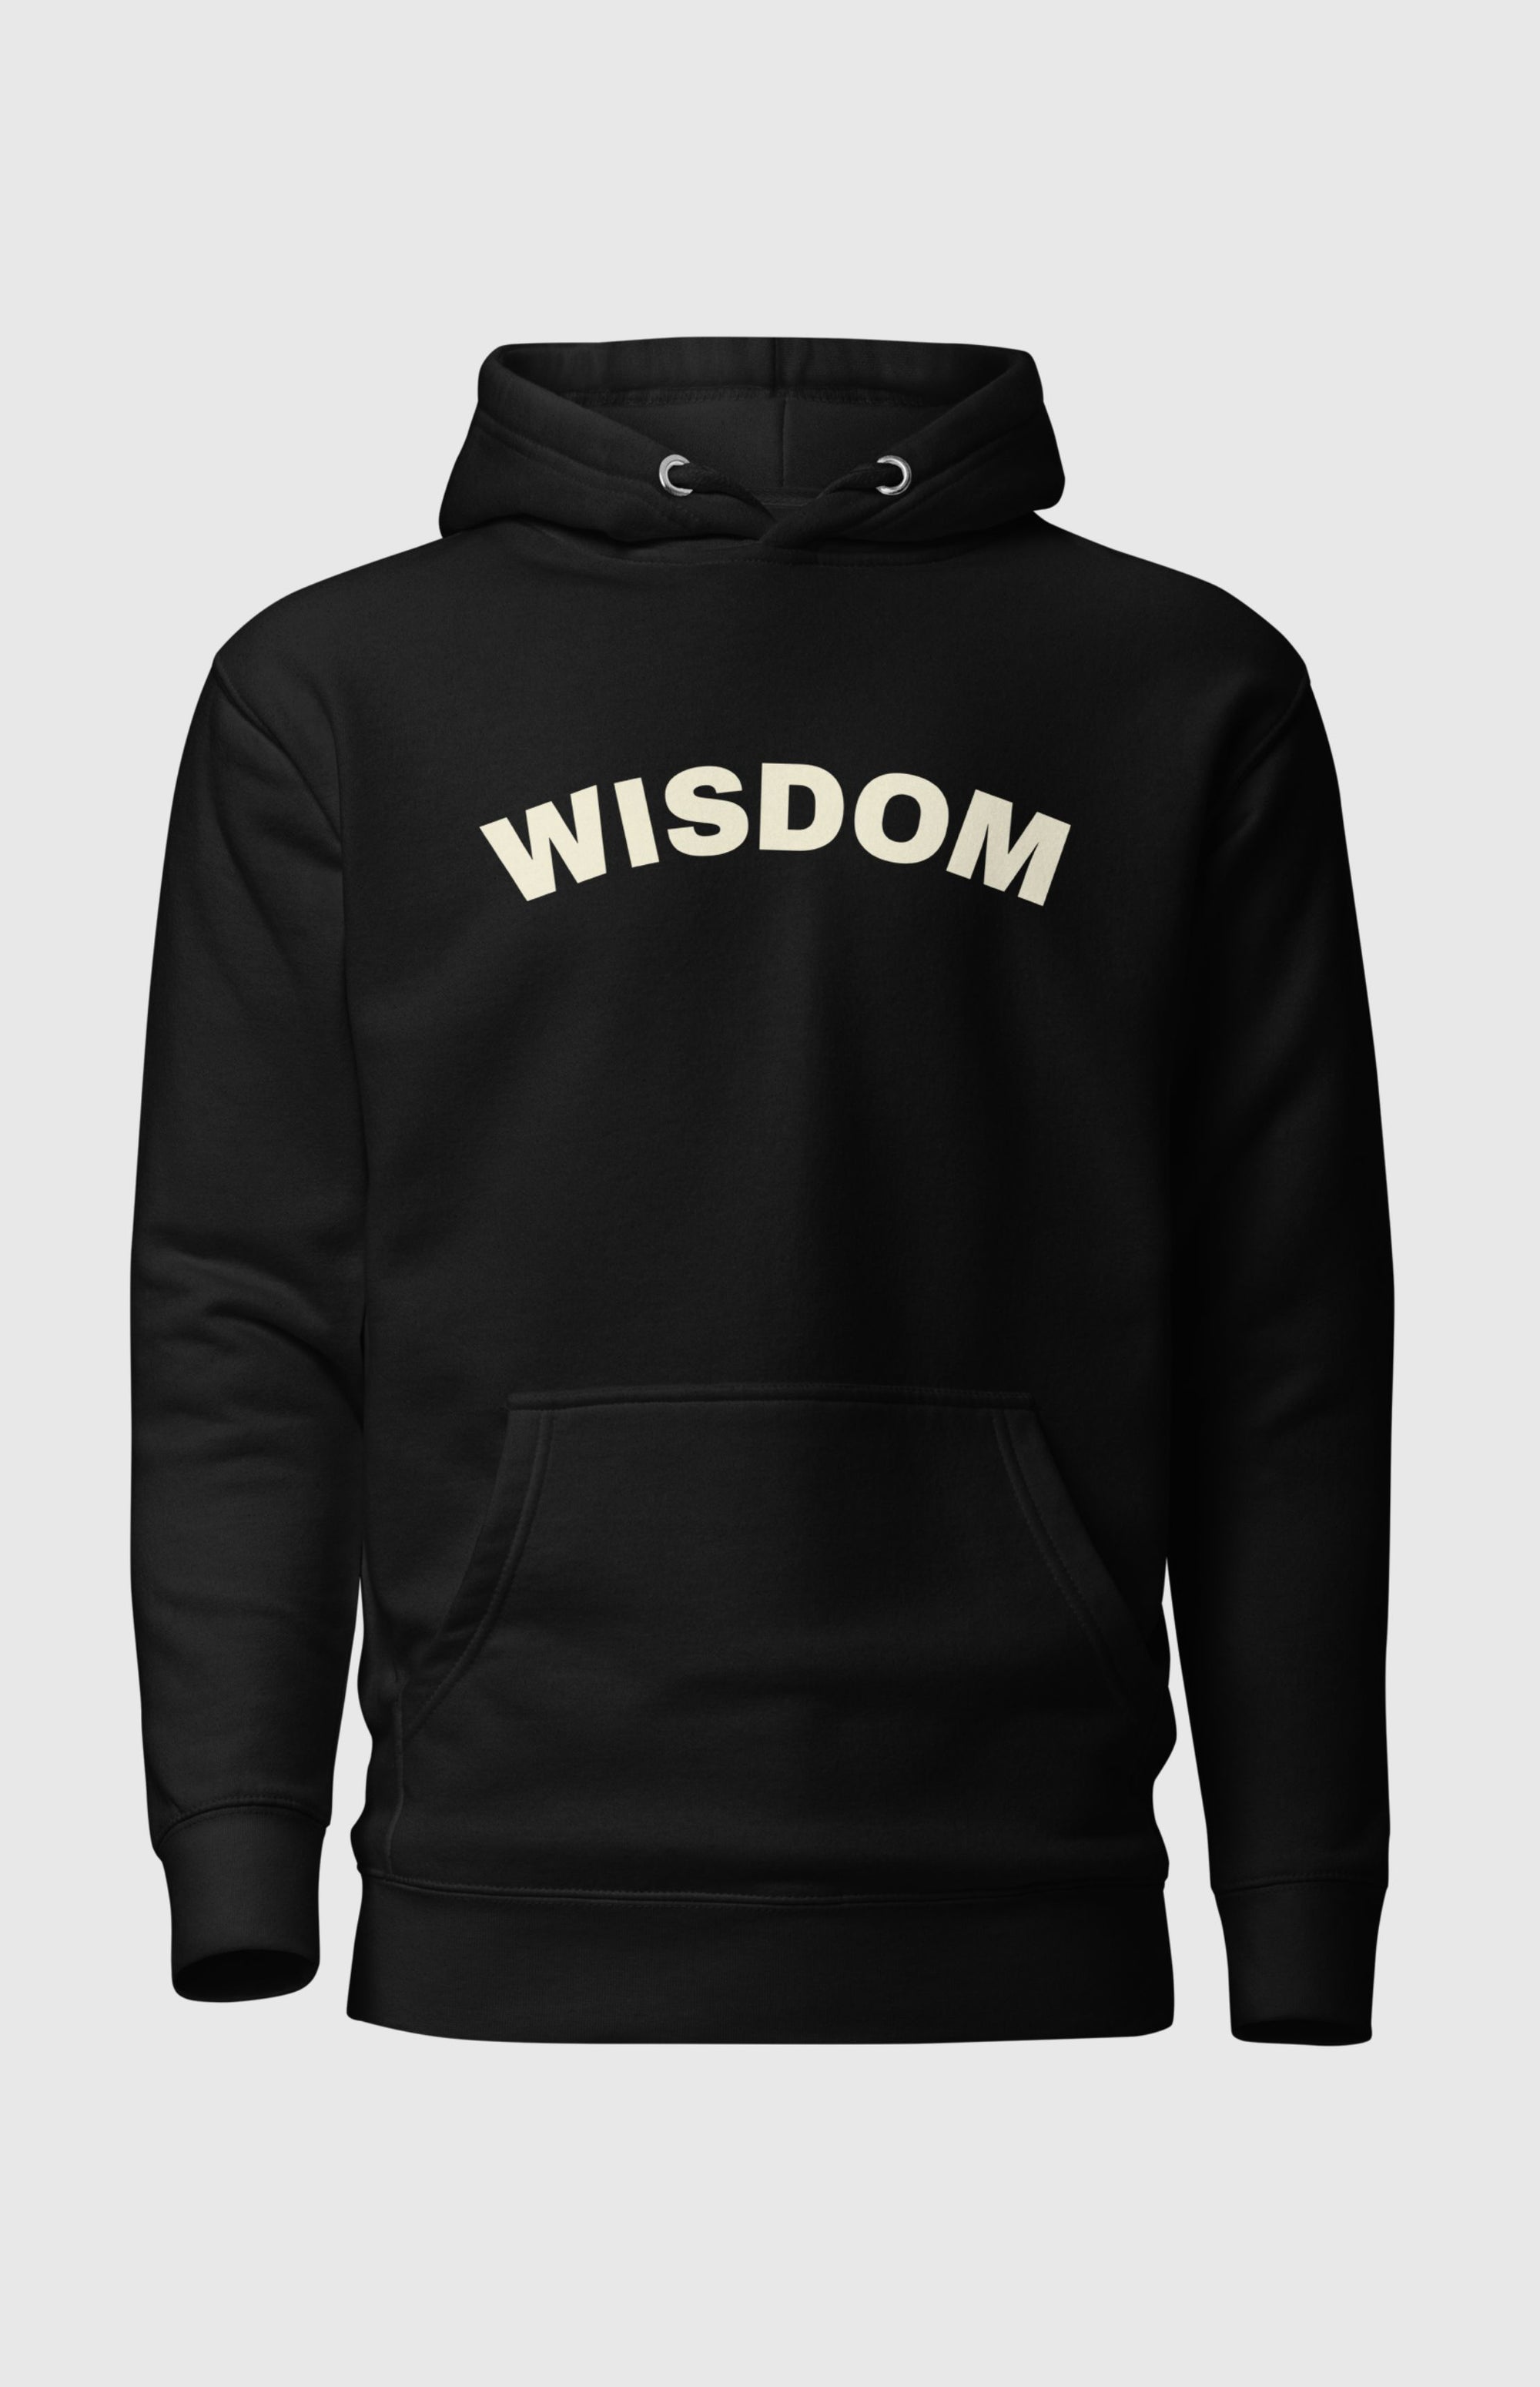 Wisdom Hoodie - Black